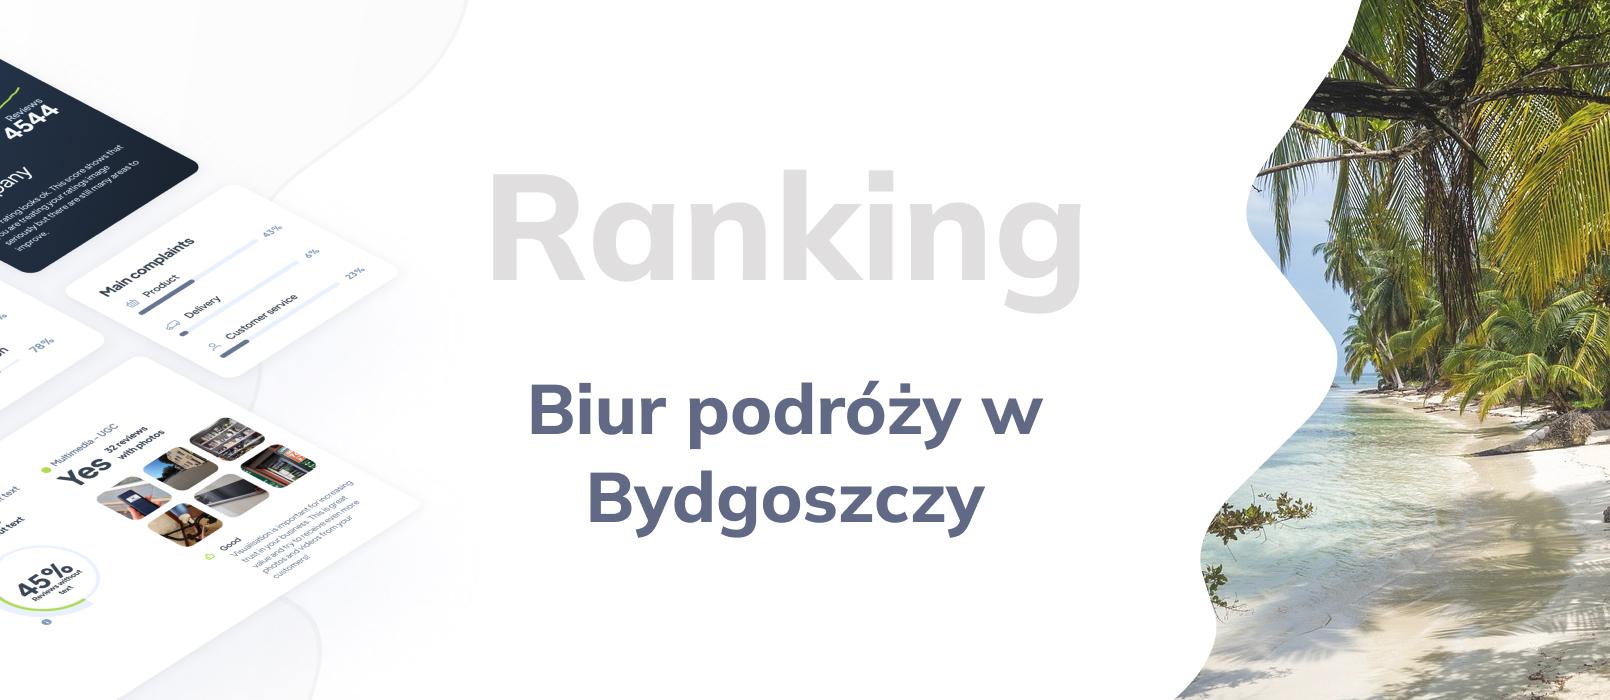 Biura podróży w Bydgoszczy - ranking TOP 10